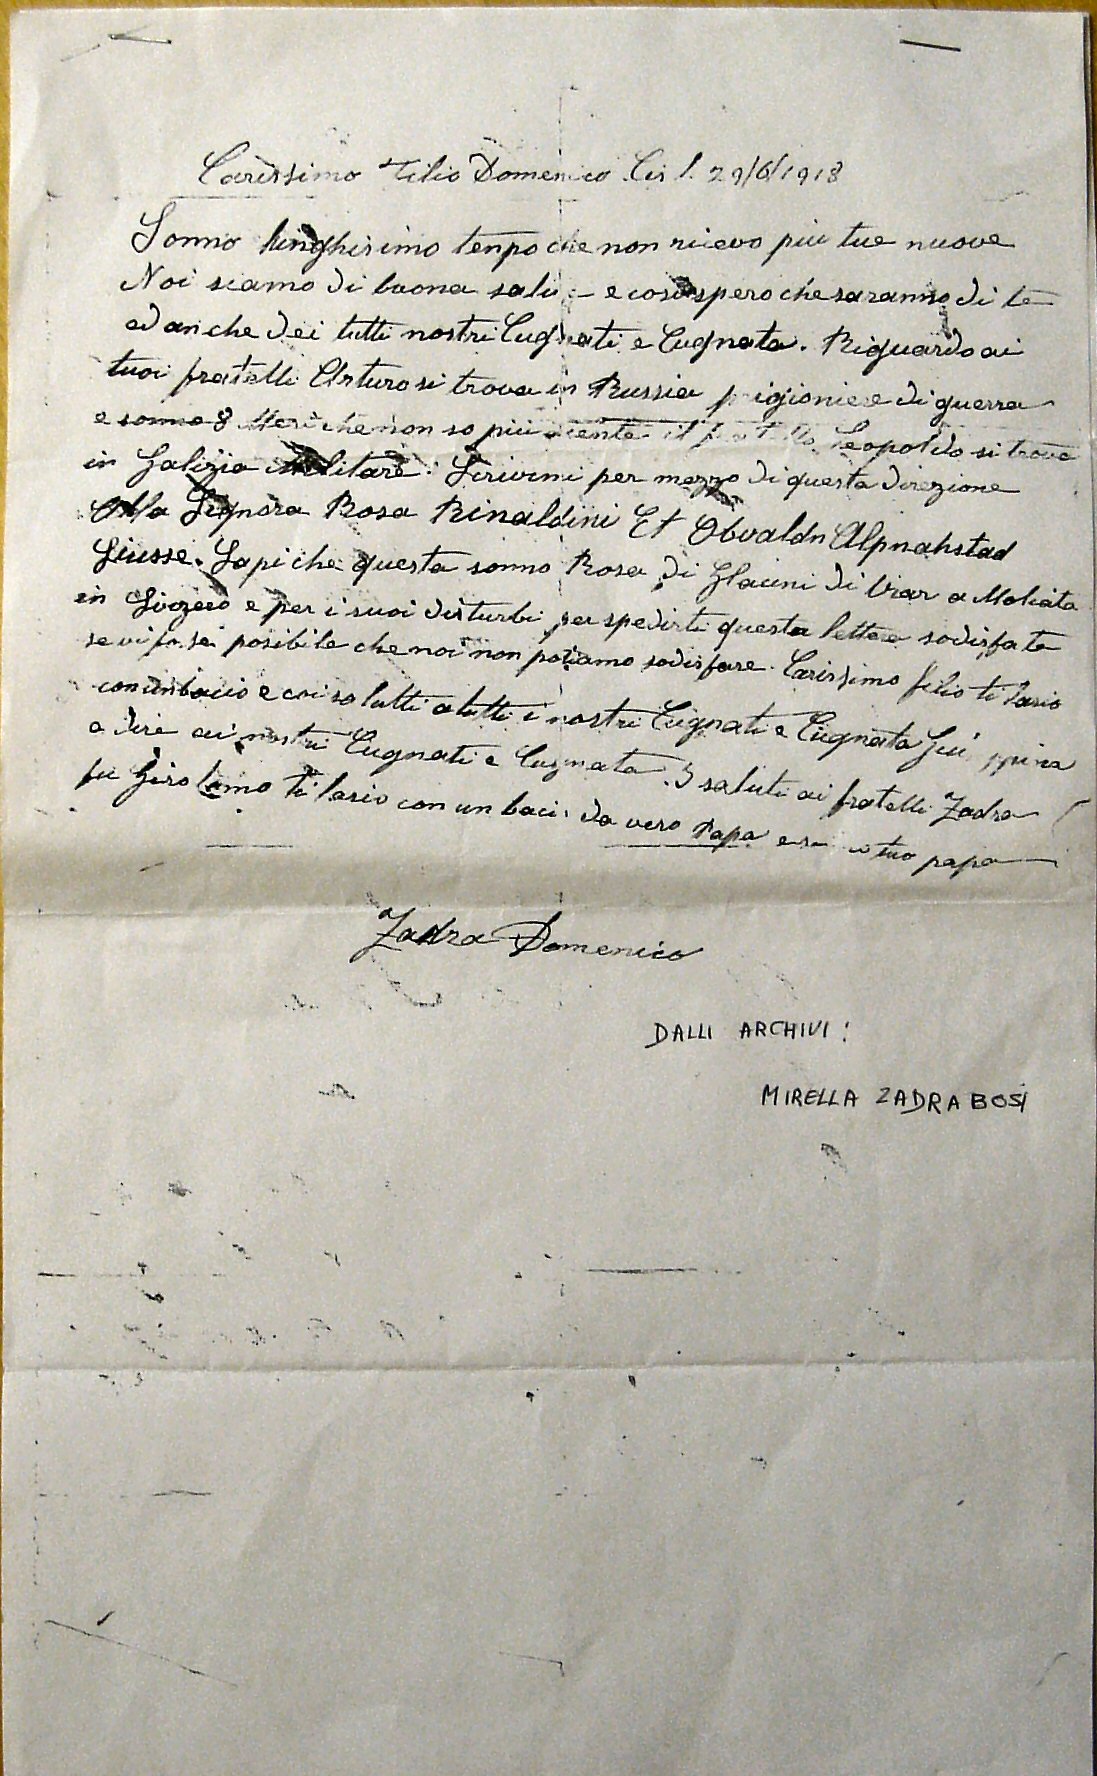 Lettera domenico zadra - 29 giugno 1918